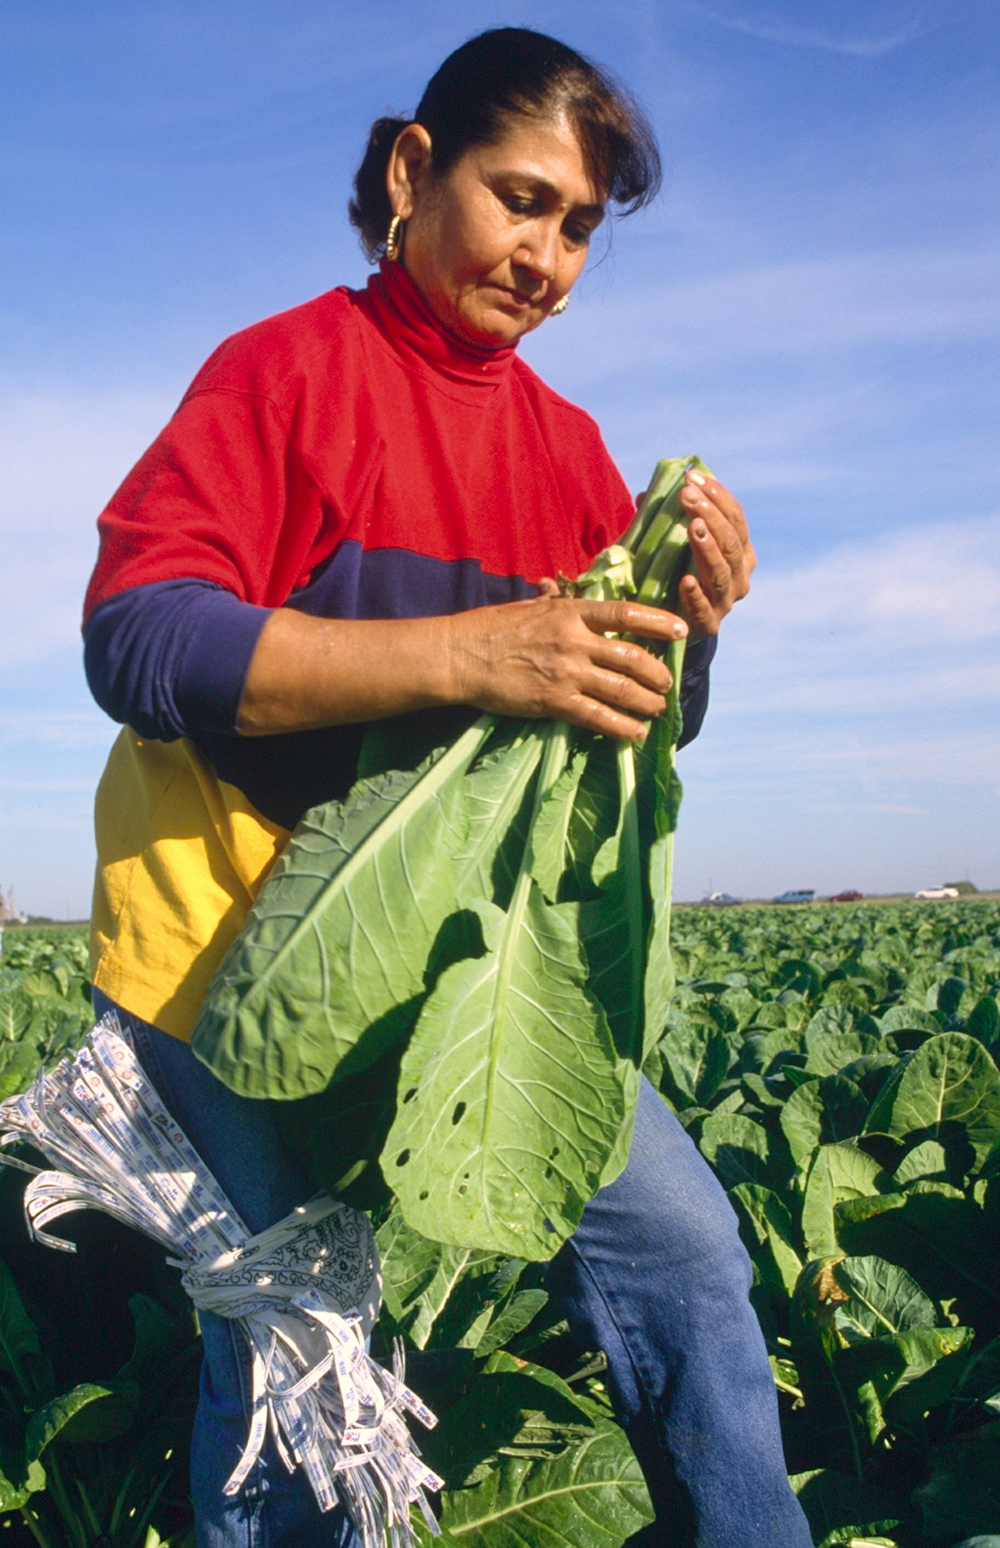 Farmworker Woman Working in Field